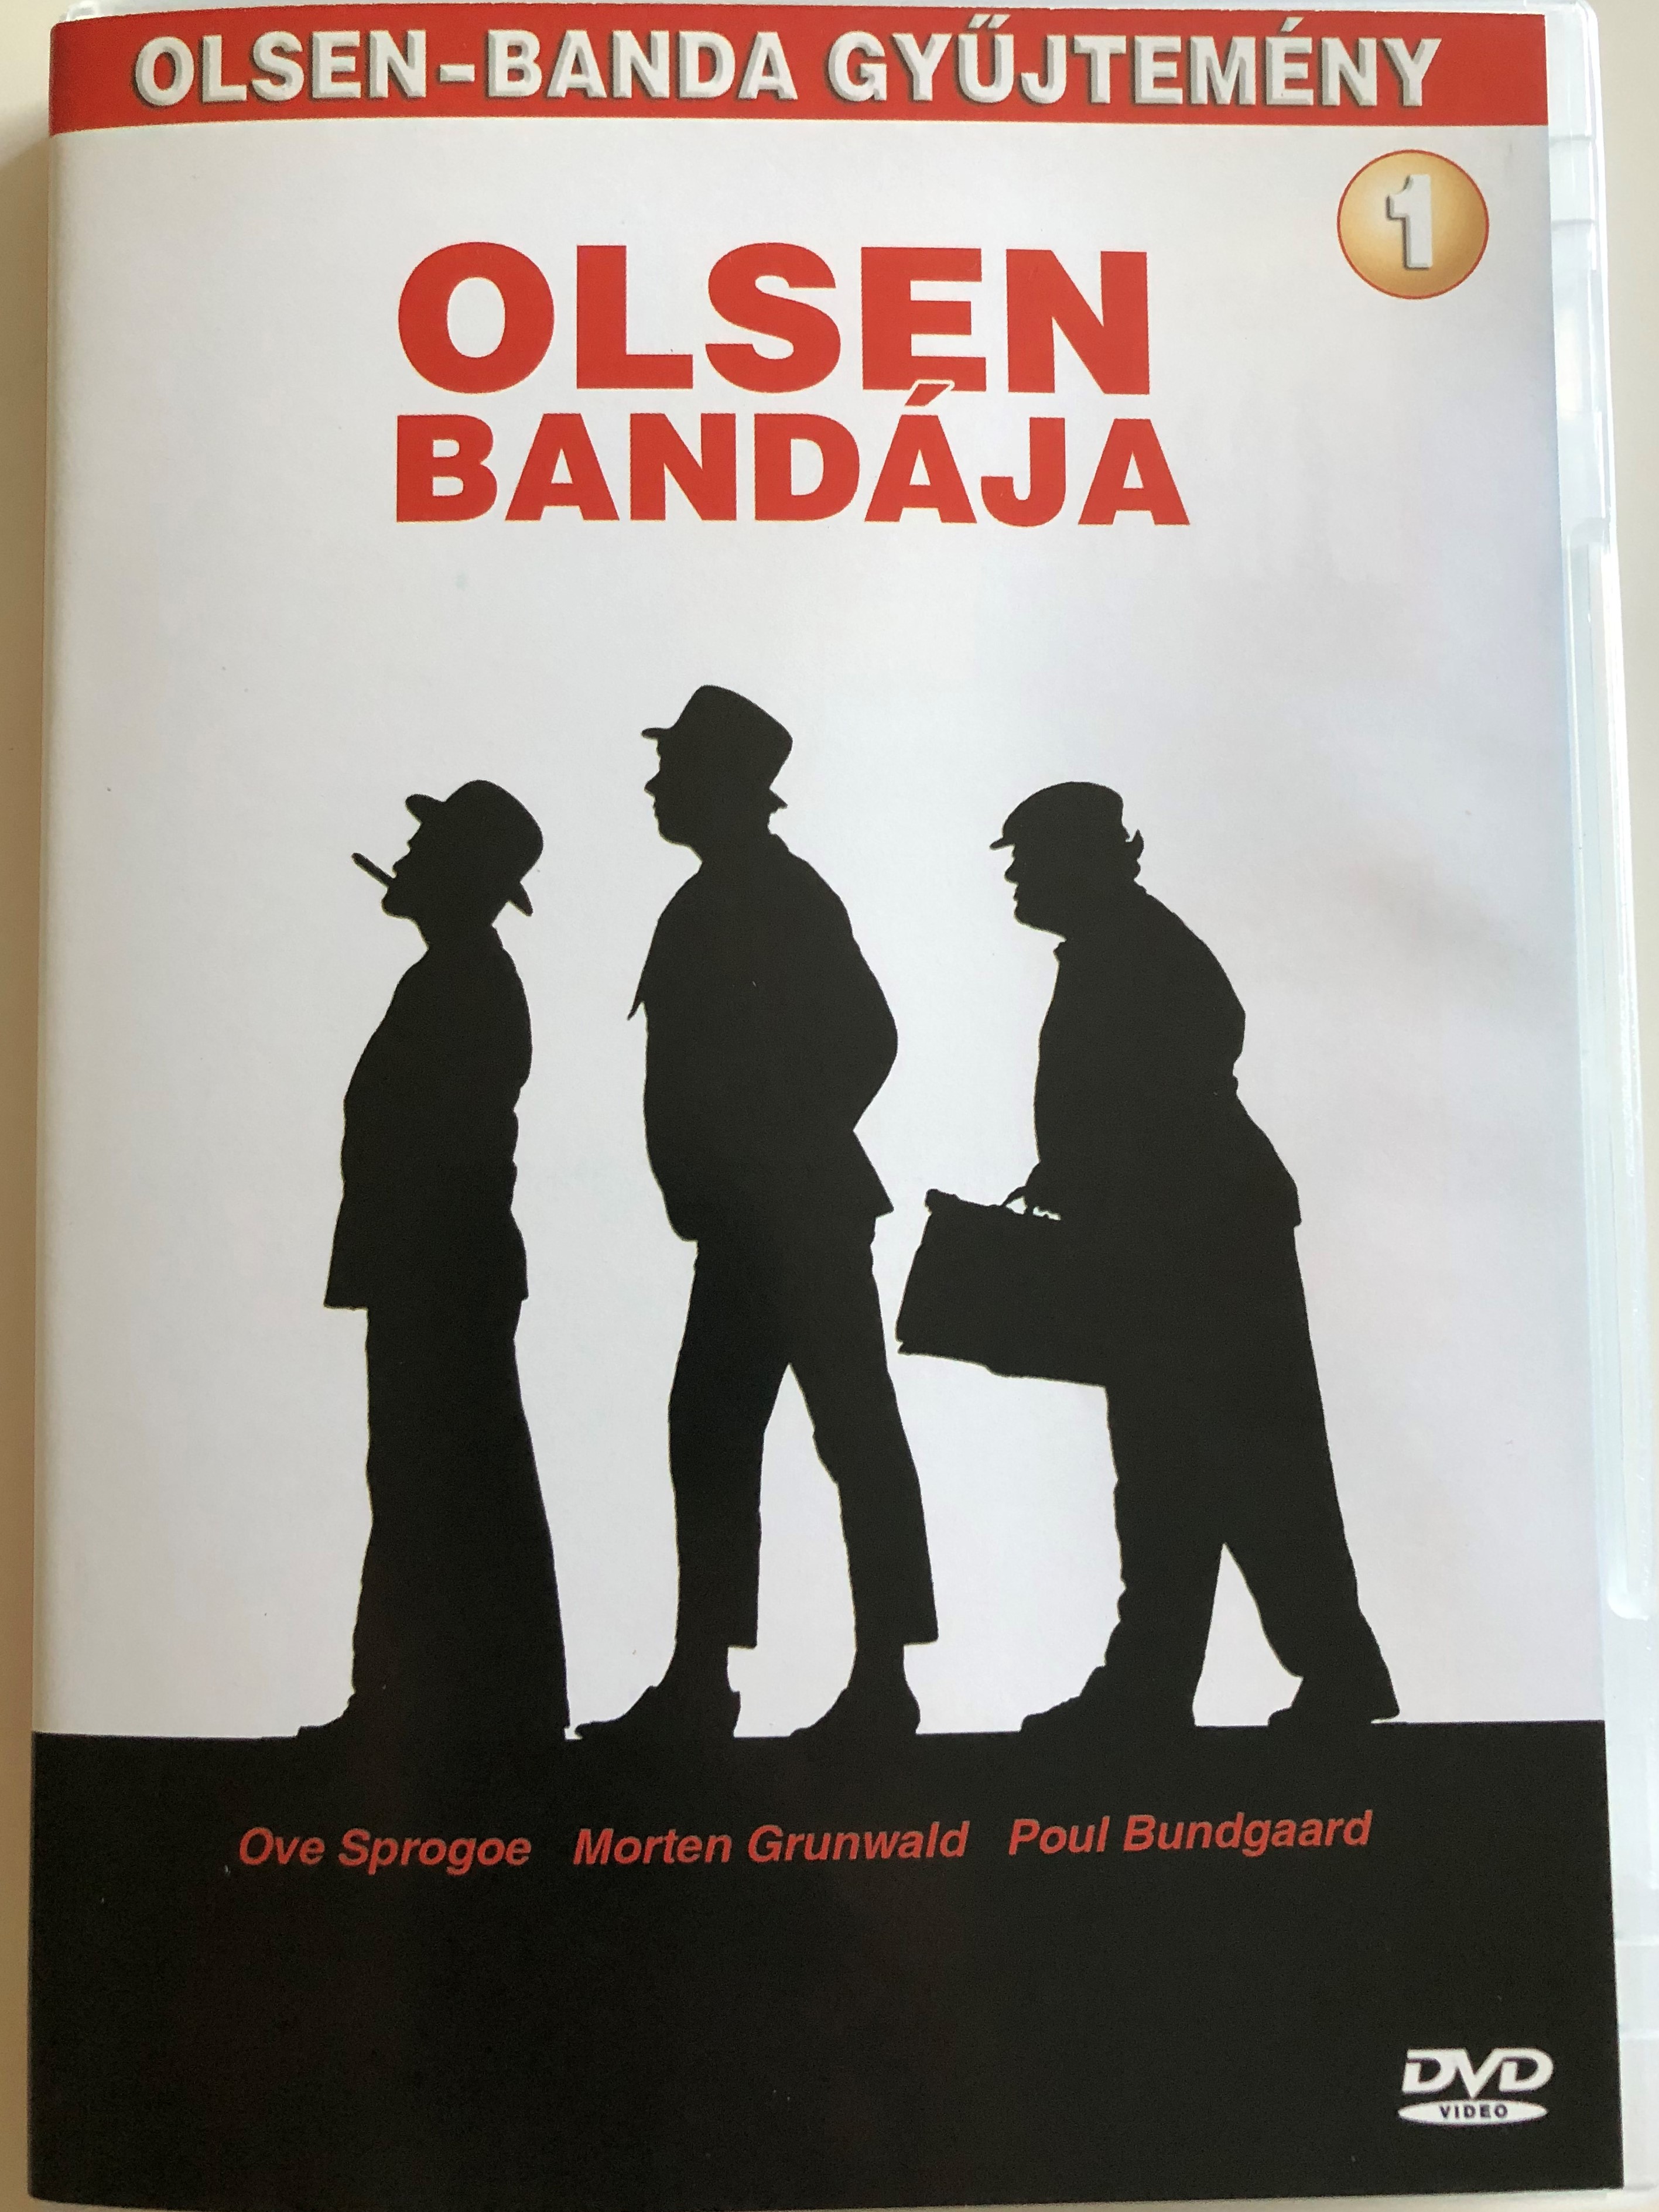 olsen-banden-dvd-1968-olsen-band-ja-directed-by-erik-balling-starring-ove-sprog-e-poul-bundgaard-morten-grunwald-peter-steen-jes-holtso-olsen-gang-collection-1.-1-.jpg